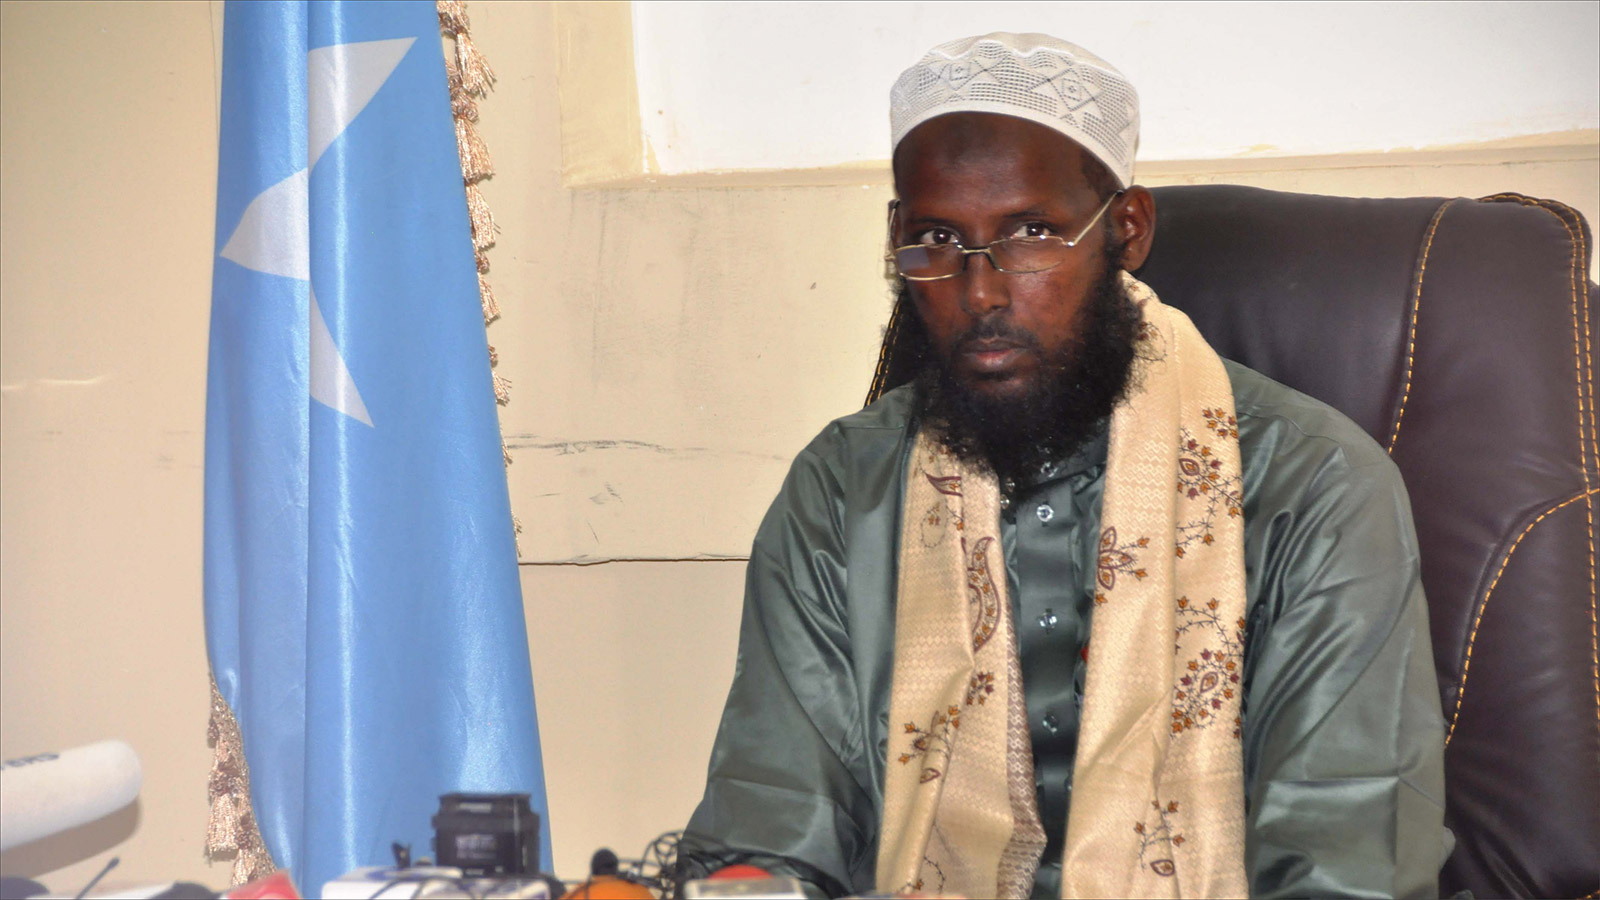 مختار روبو خلال مؤتمر صحفي في مقديشو بعد استسلامه للحكومة الصومالية يوم 15 أغسطس/آب 2017 (الجزيرة)